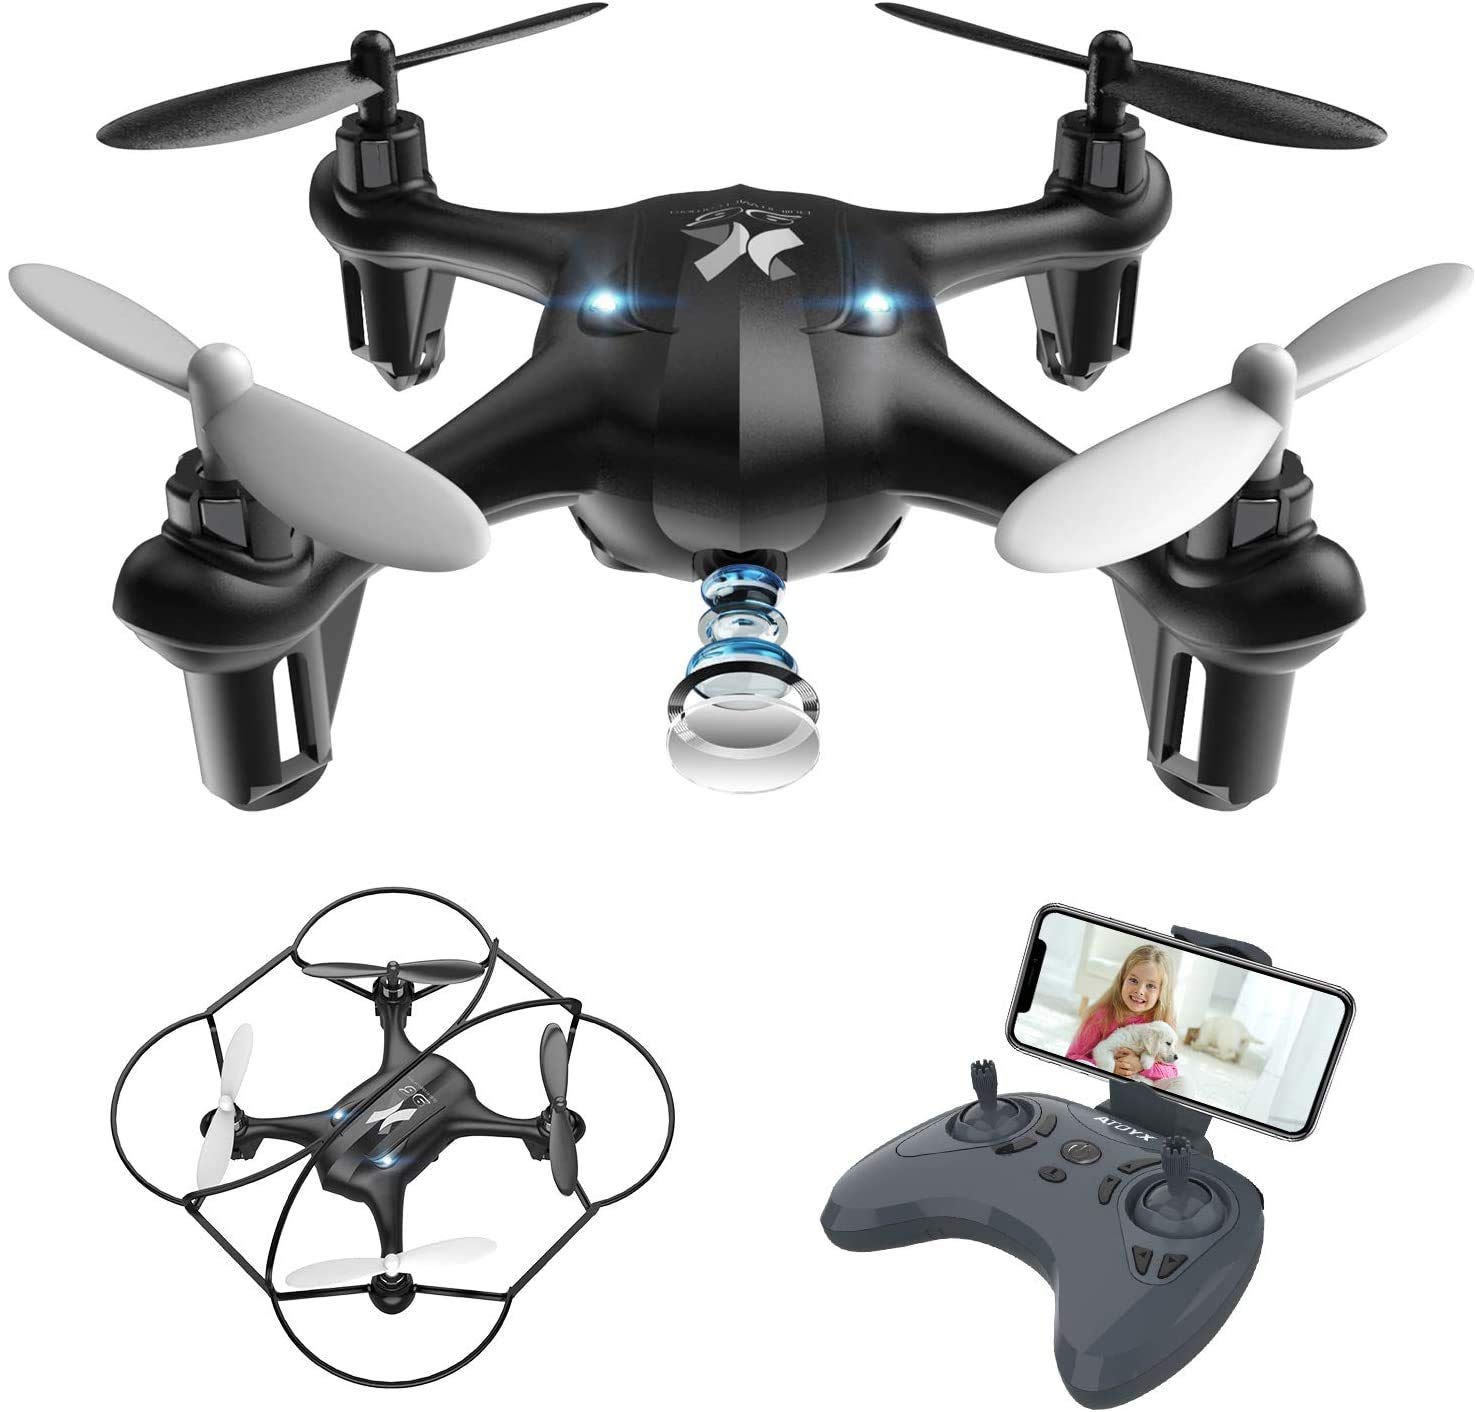 Atoyx AT-96 Drohne mit HD-Kamera Hubschrauber FPV Flugzeug Mini WiFi Drohne Quadcopter mit Headless Mode Flugzeug Mini Fernbedienung Geschenk für Kinder oder Anfänger – Schwarz von ATOYX